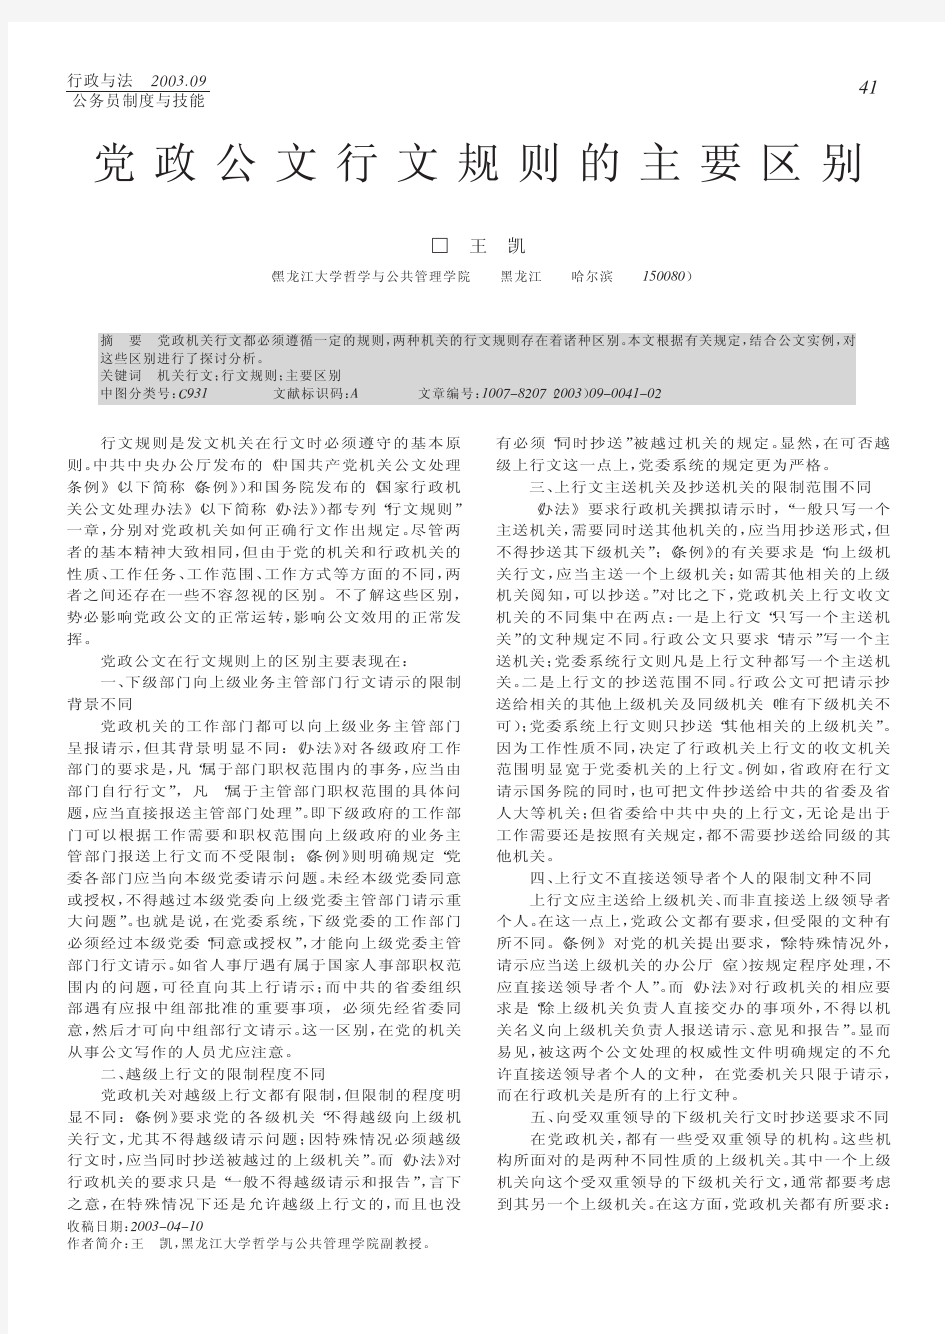 党政公文行文规则的主要区别_王凯